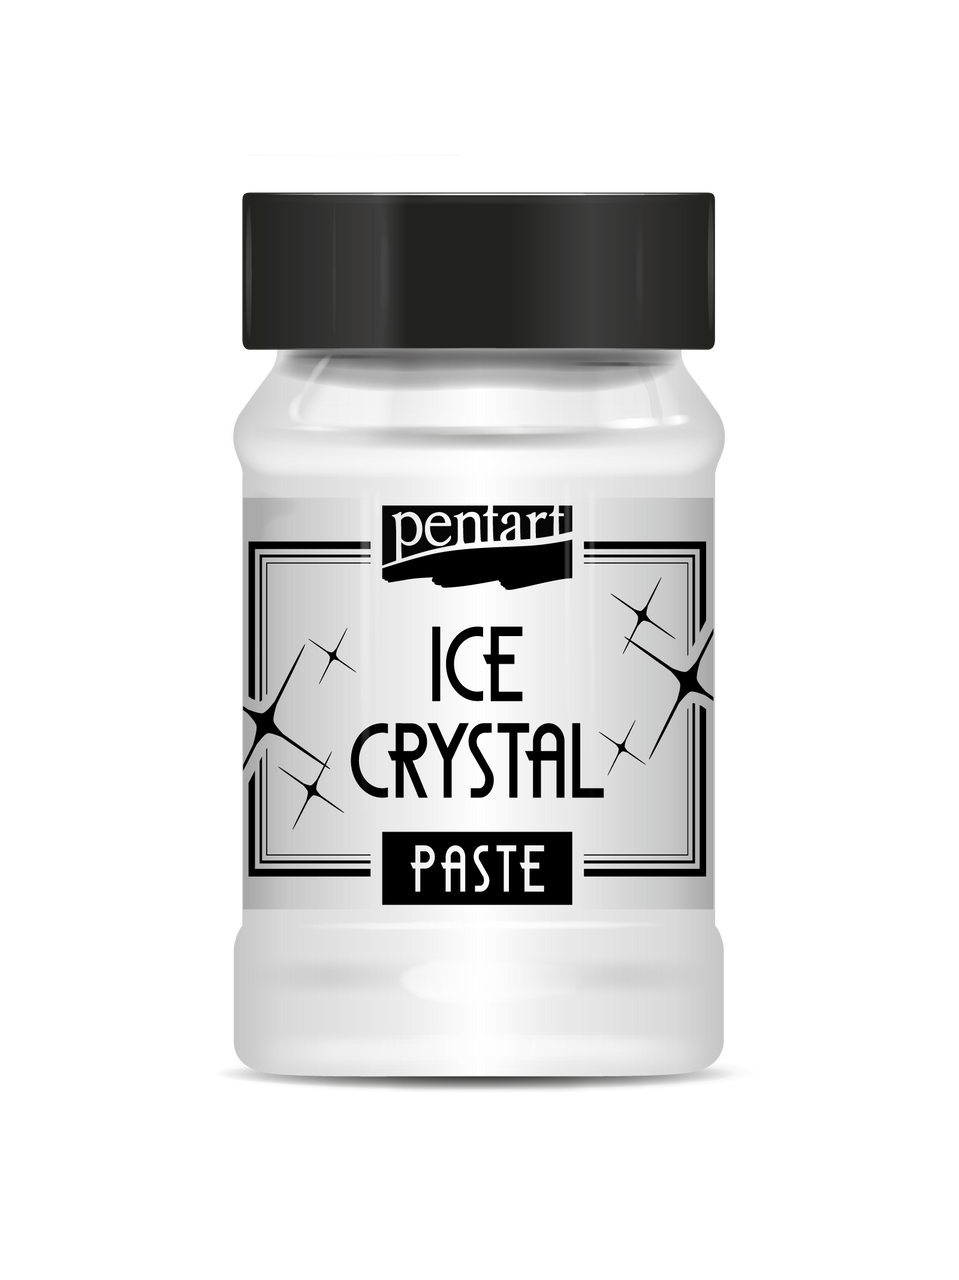 Pentart ICE Crystal Paste - Decoupage Queen